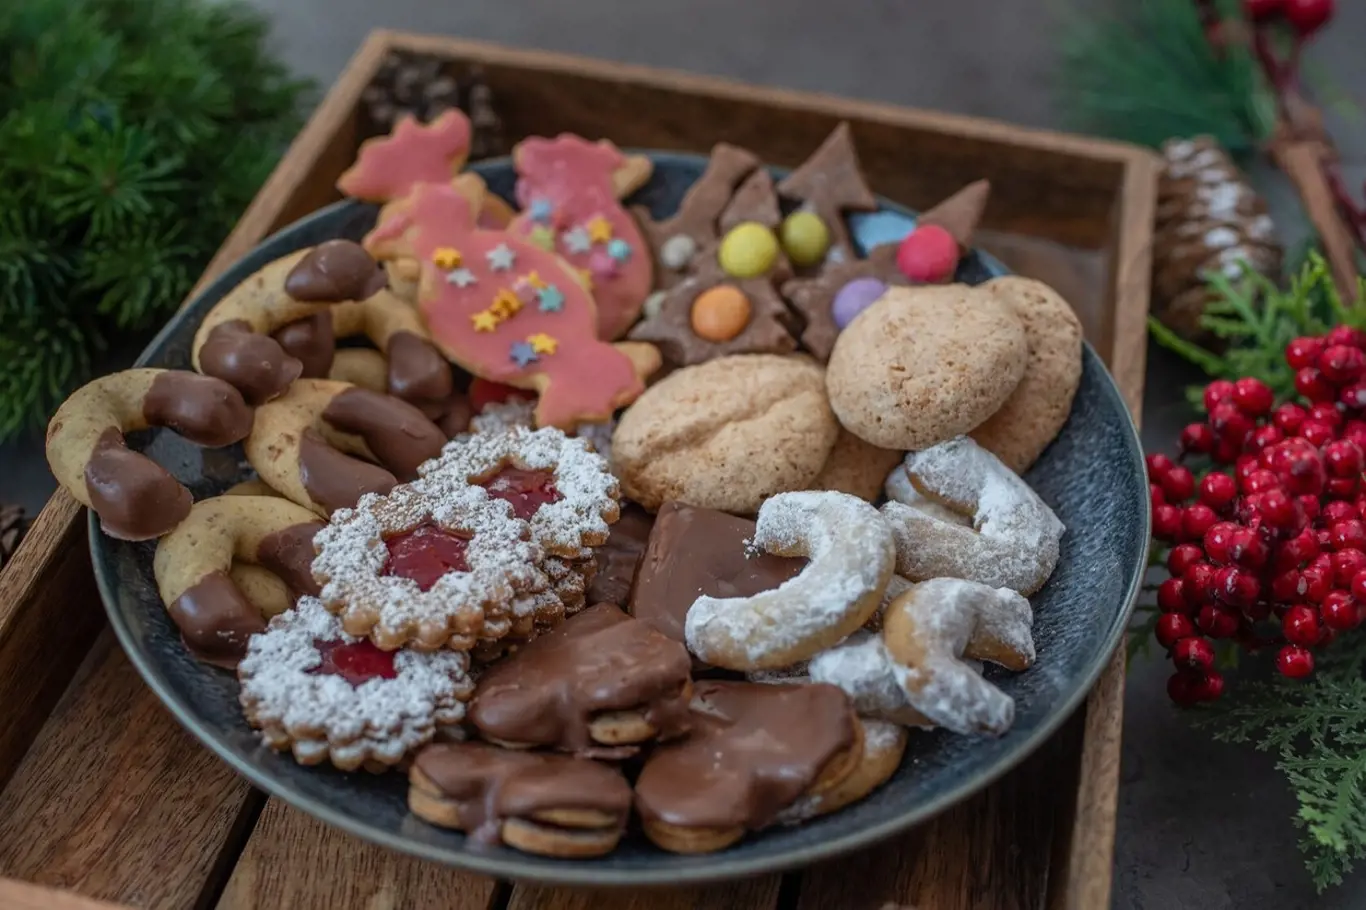 Vaši sváteční vánoční tabuli mohou zpestřit již zapomenuté, avšak chuťově nepřekonatelné druhy cukroví.